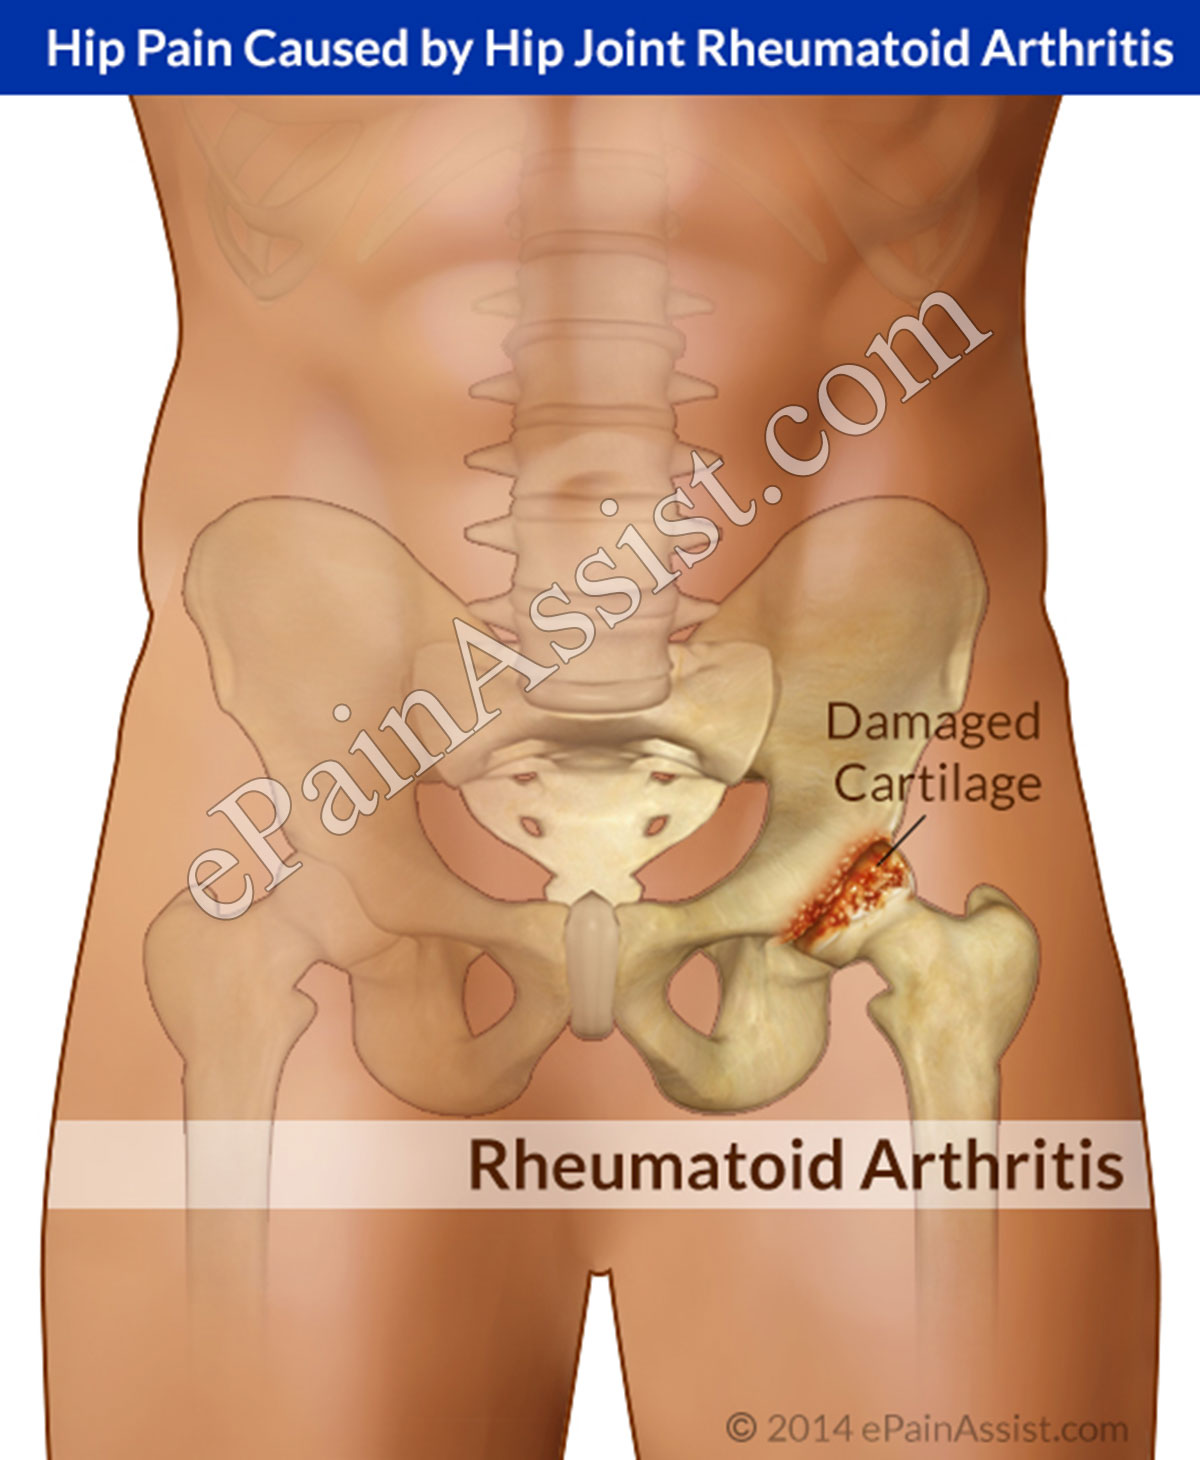 Hip Joint Rheumatoid Arthritis: Causes